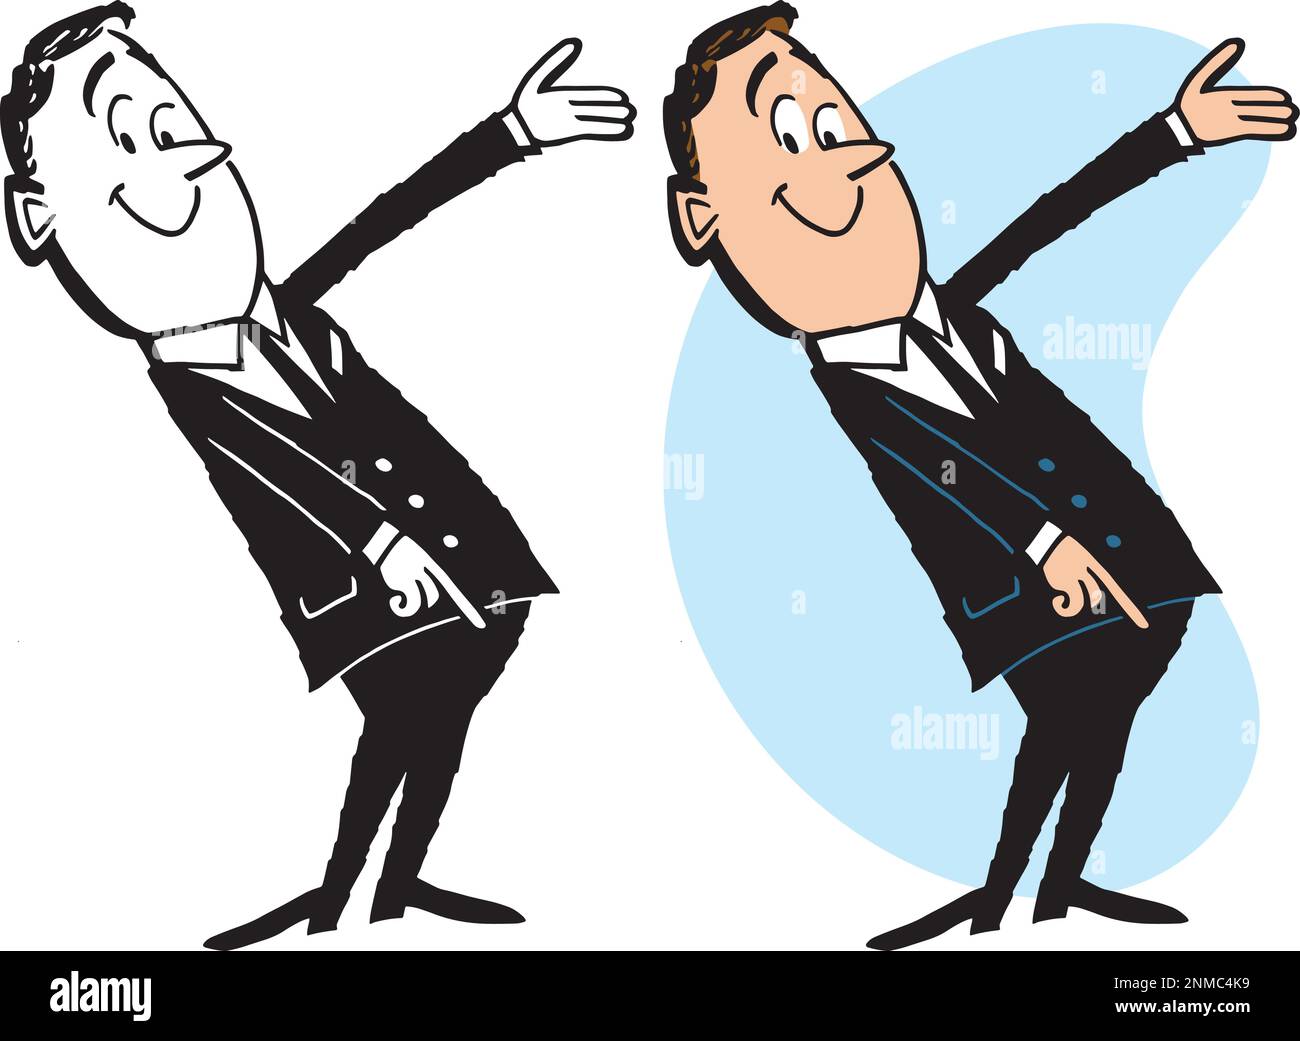 Une caricature rétro vintage d'un homme d'affaires qui fait le geste et pointe vers la droite. Illustration de Vecteur